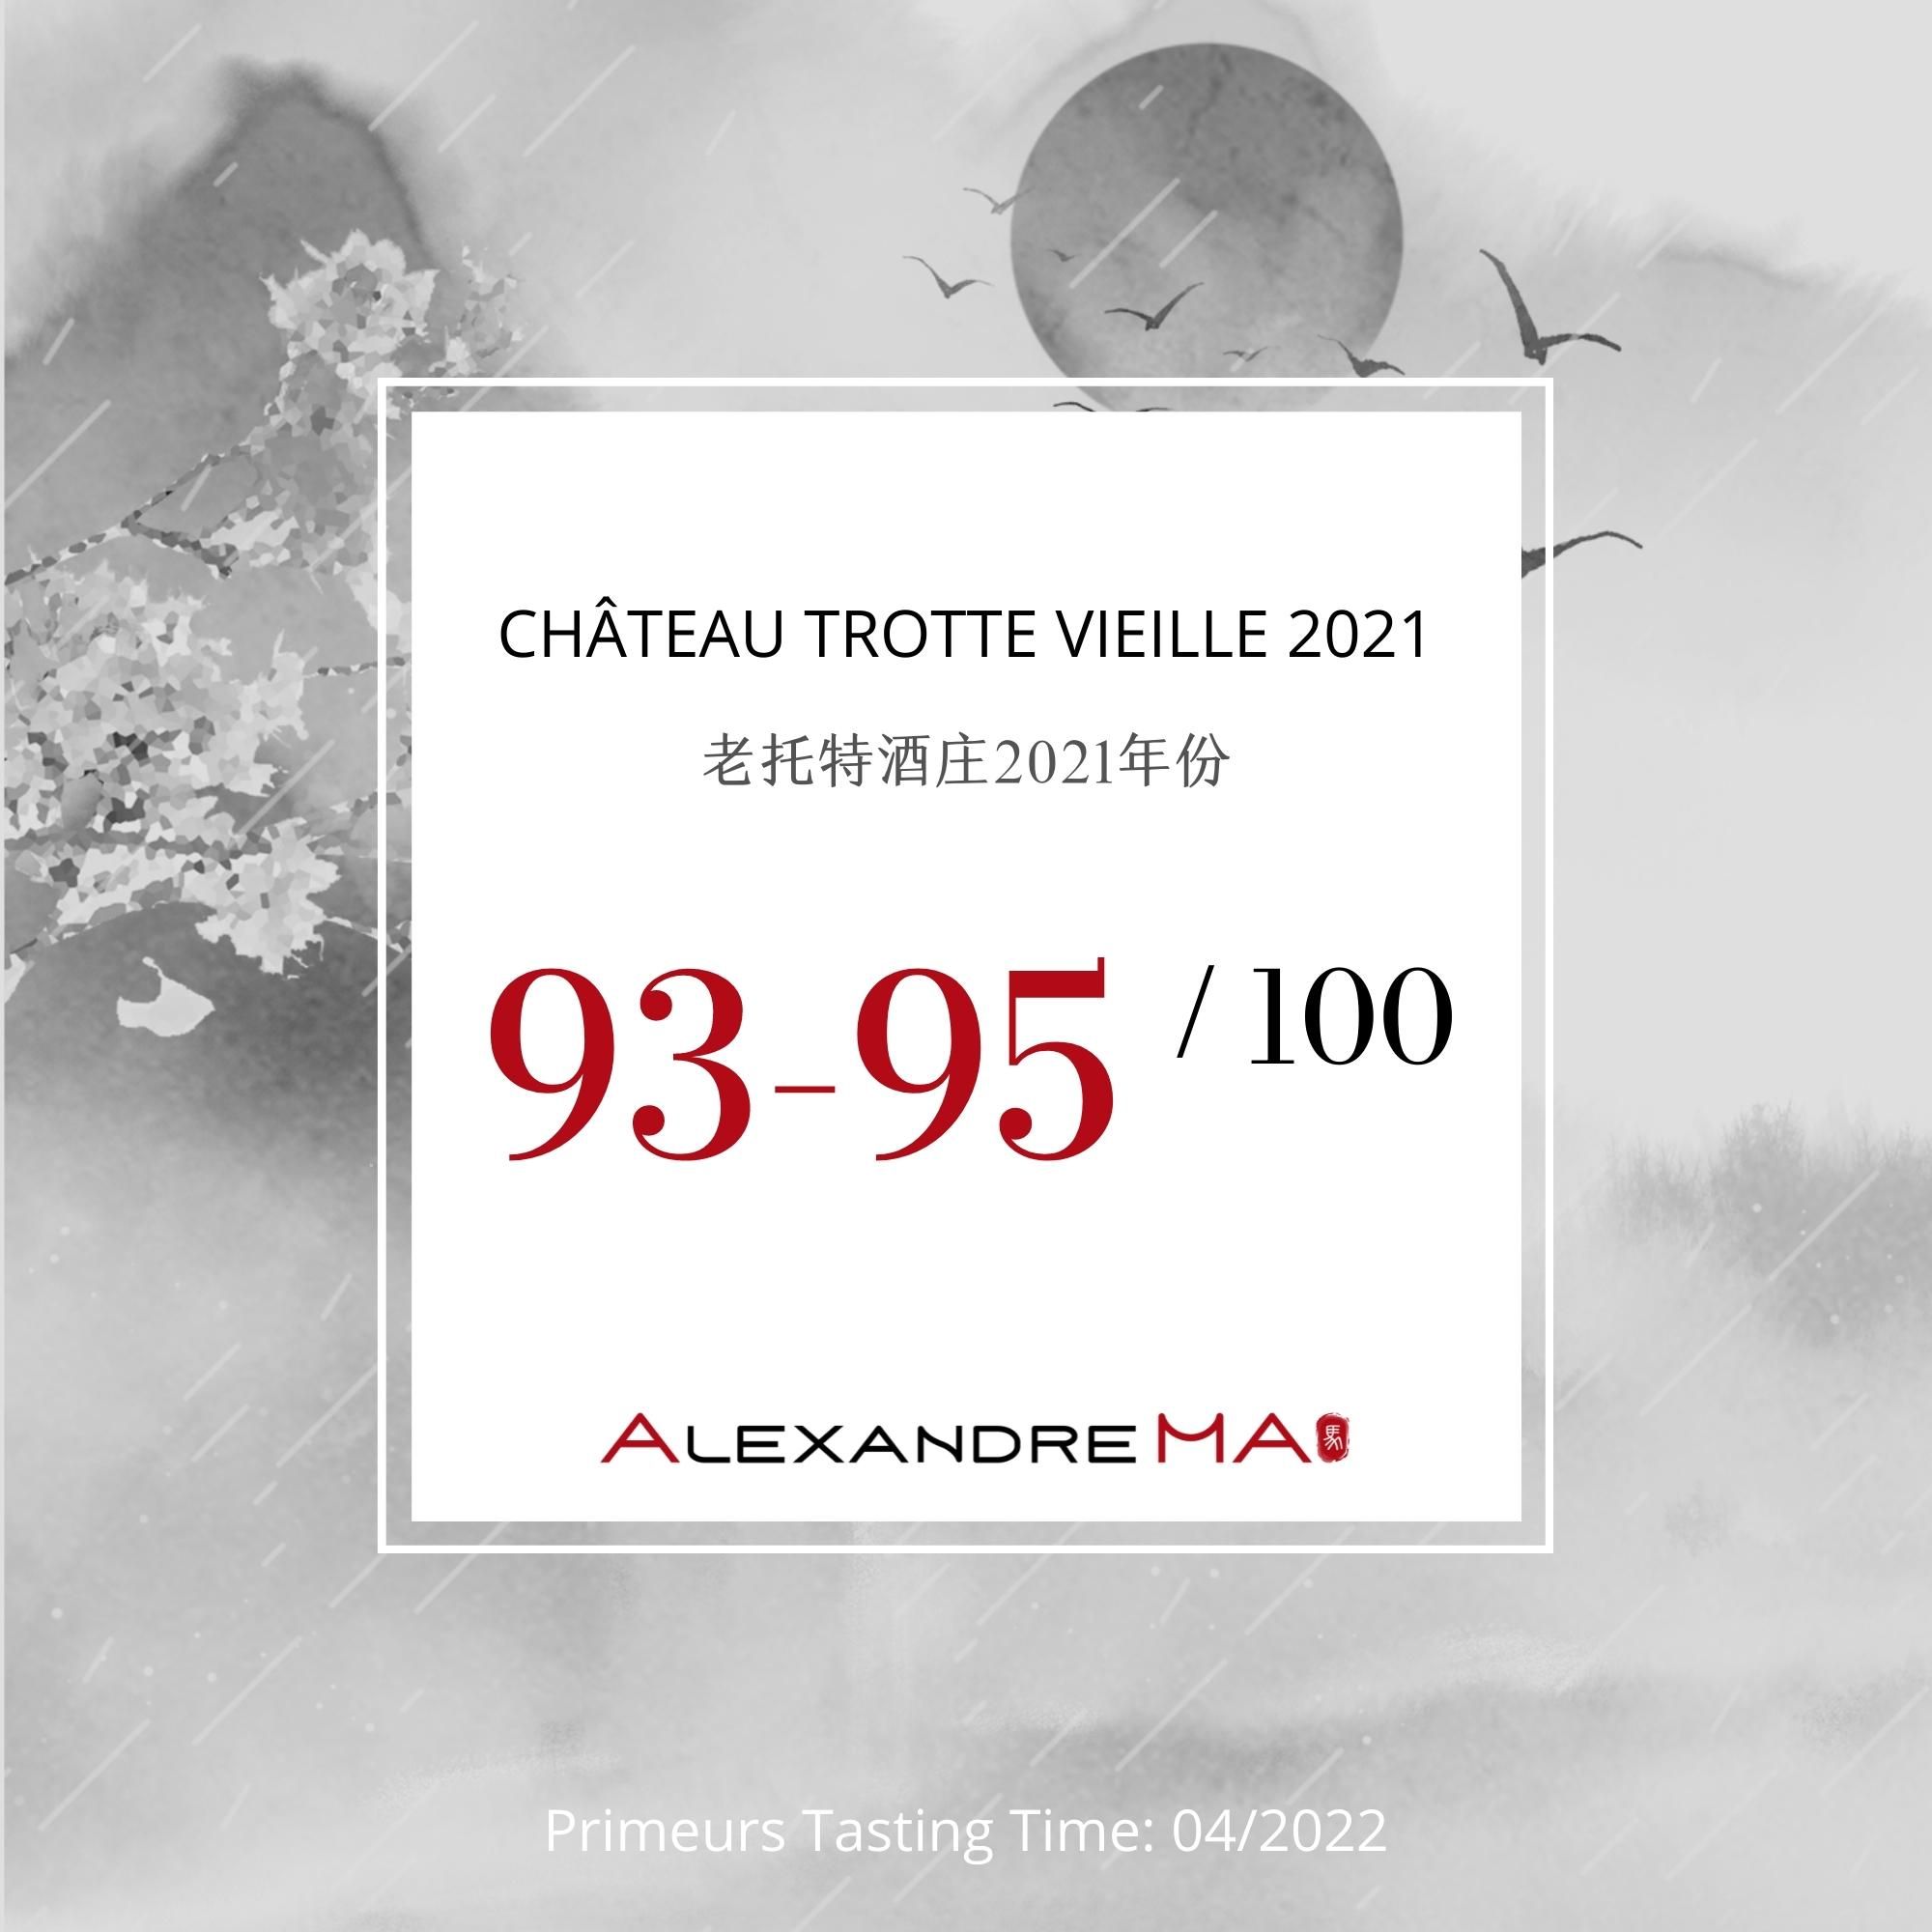 Château Trotte Vieille 2021 老托特酒庄 - Alexandre Ma